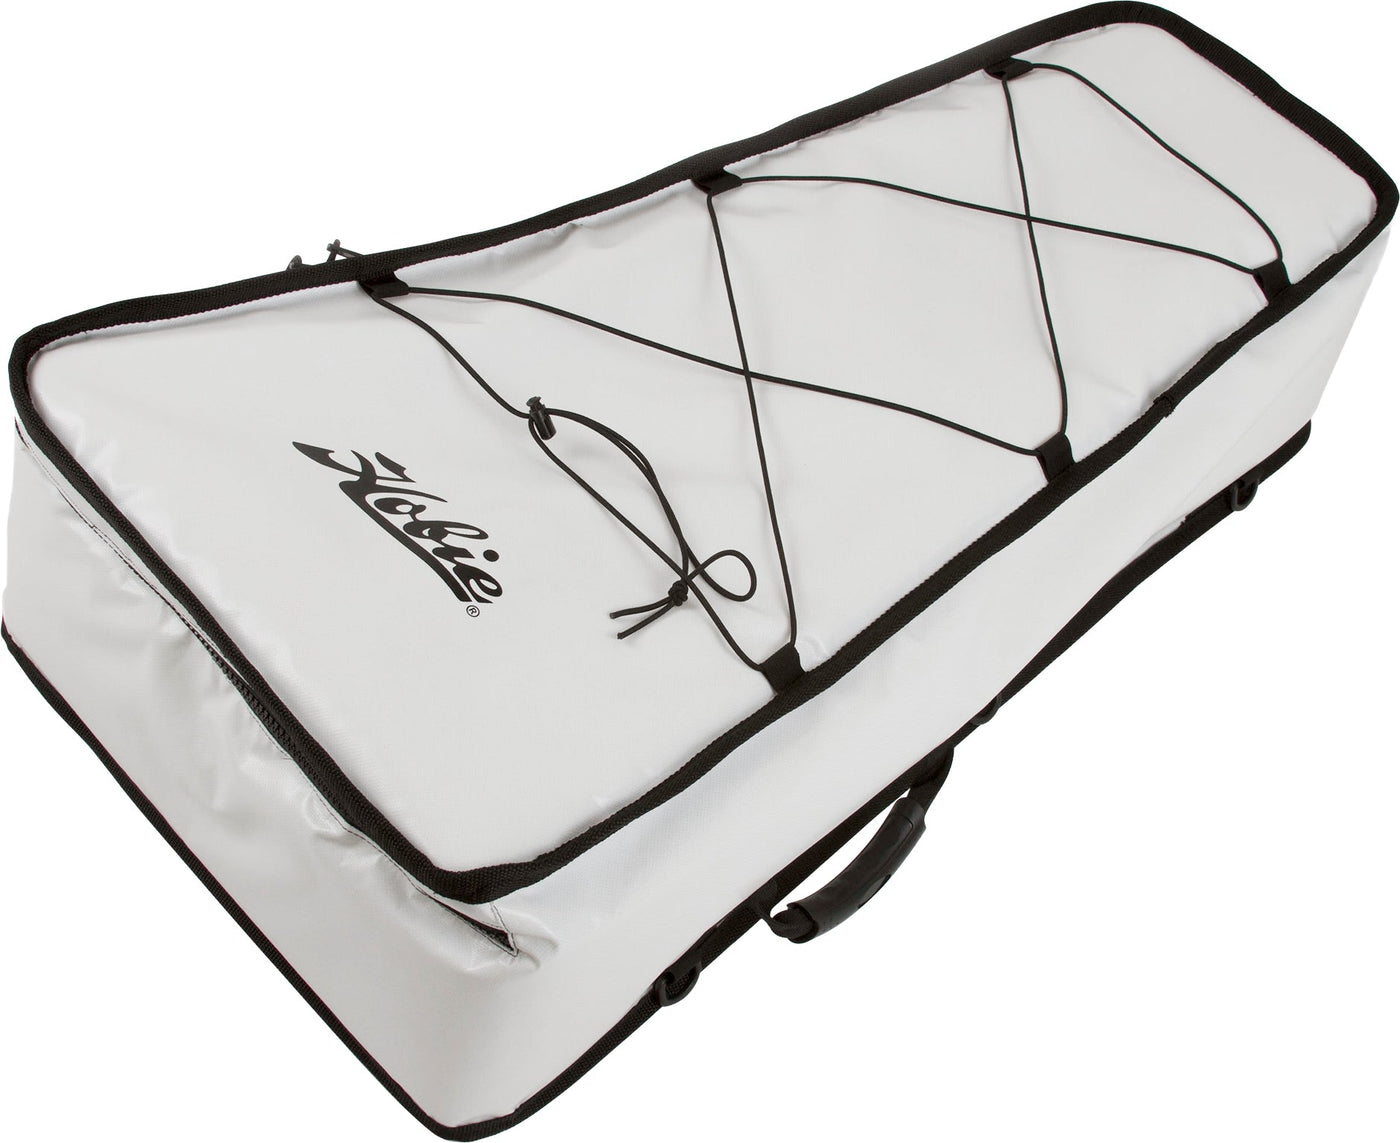 Reliable Fishing 30 X 48 Insulated Kayak Bag